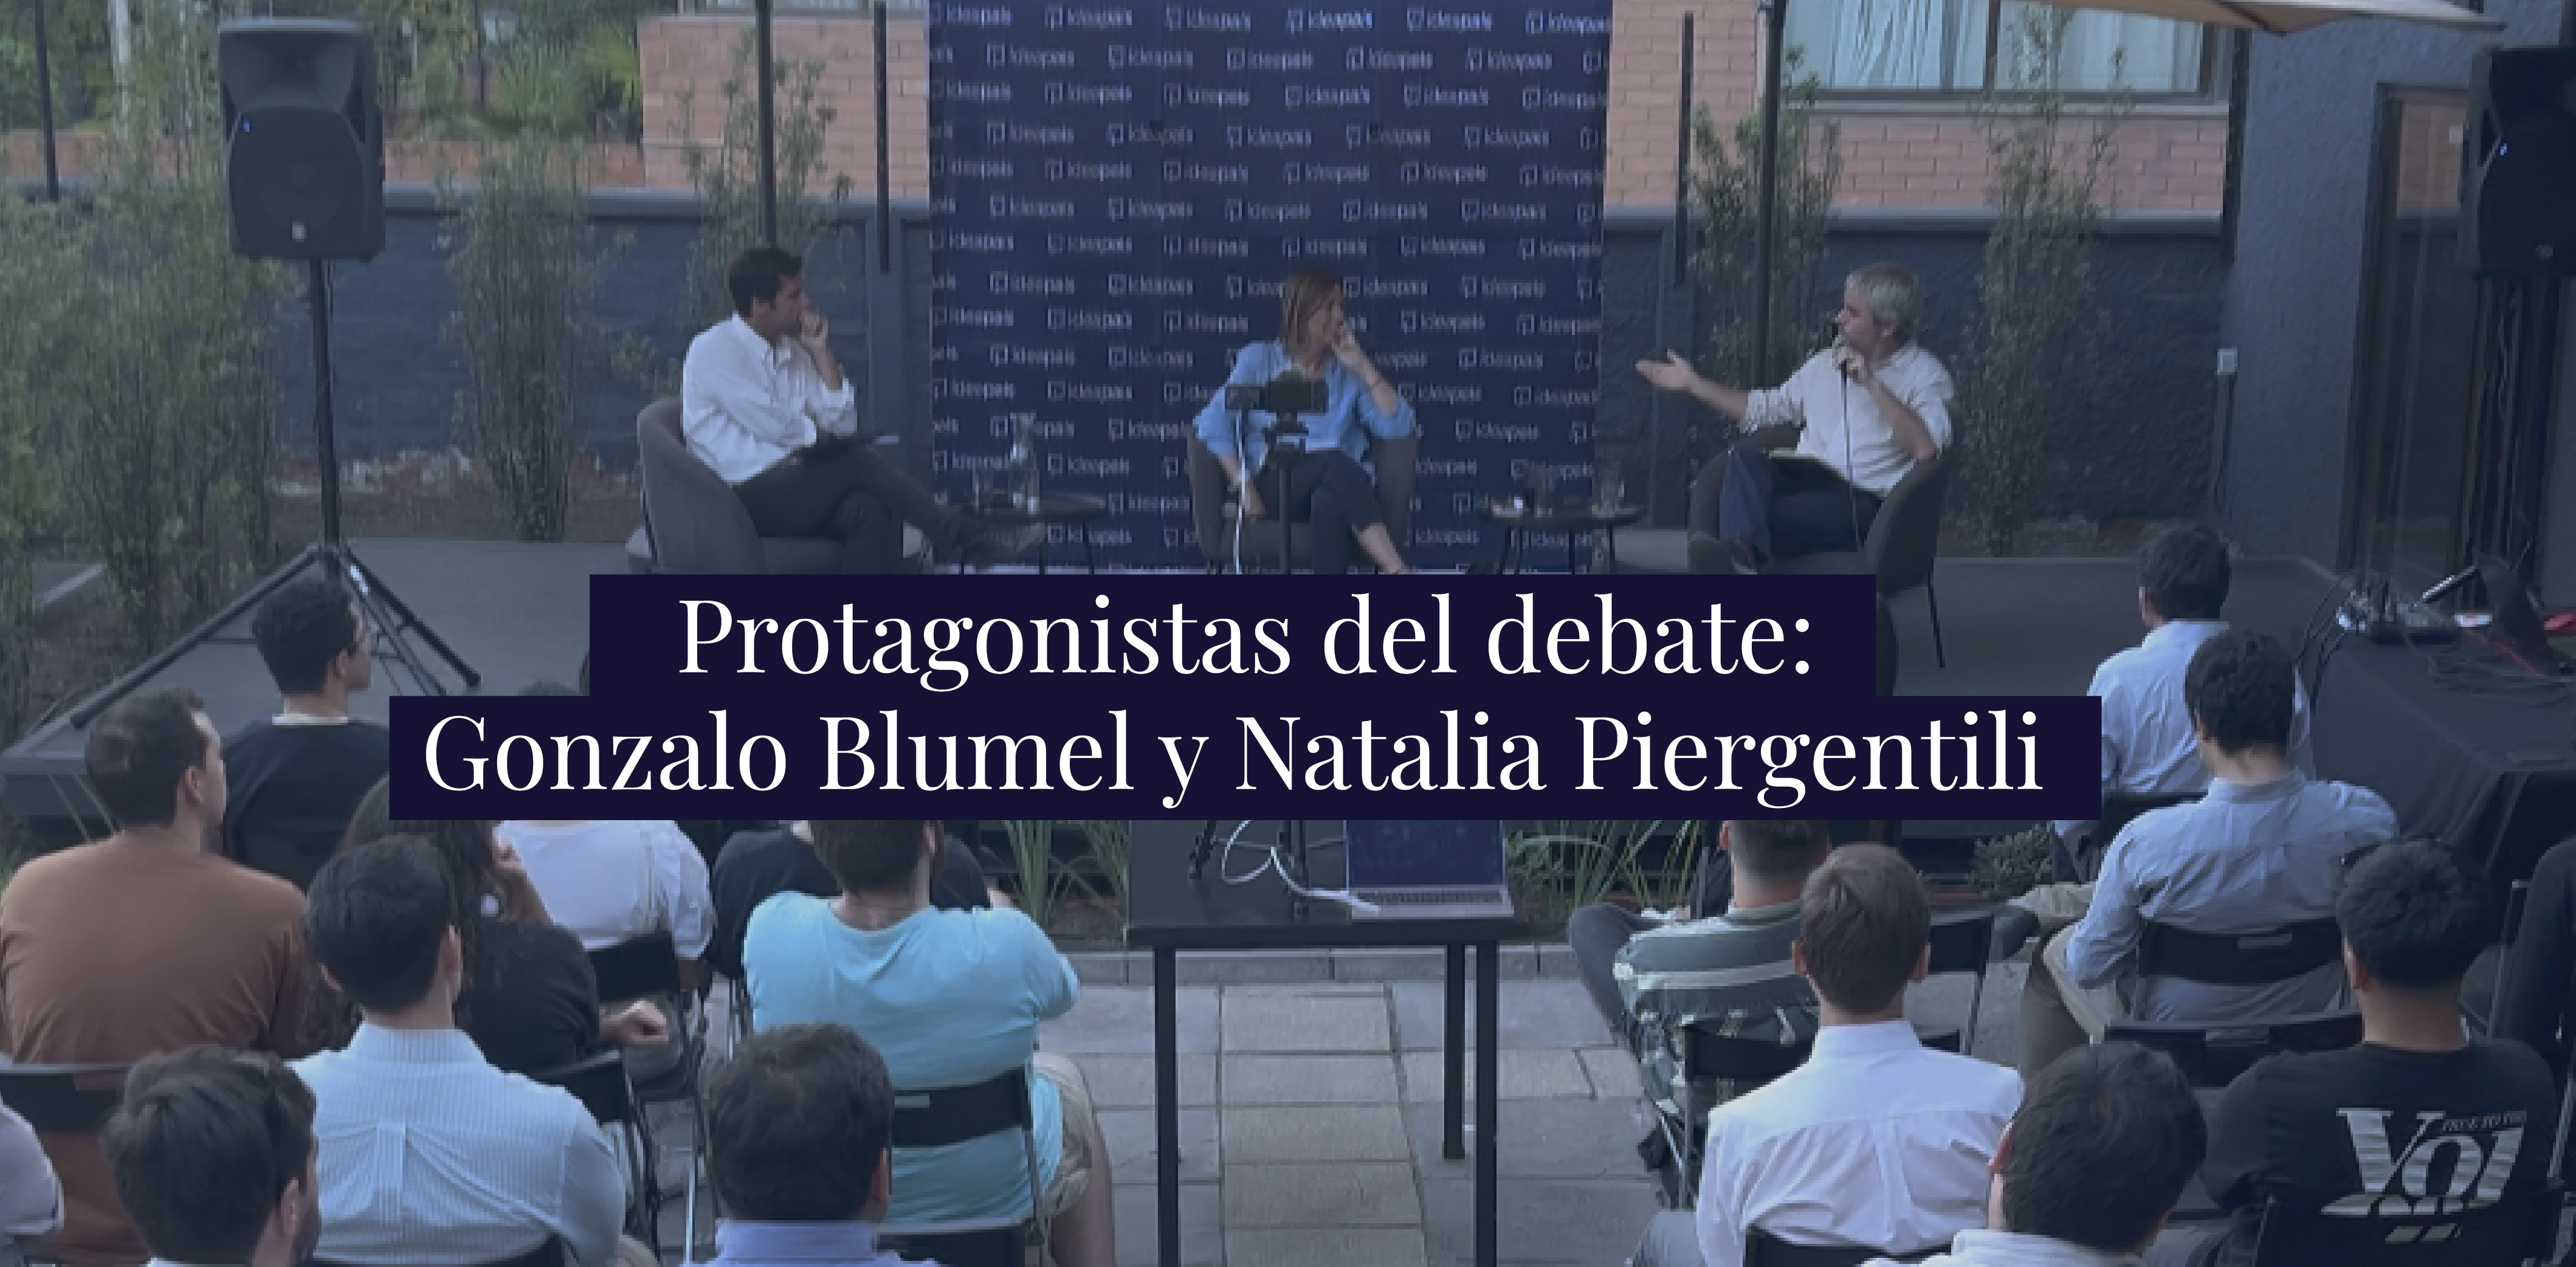 Gonzalo Blumel y Natalia Piergentili analizaron el legado político de Sebastián Piñera